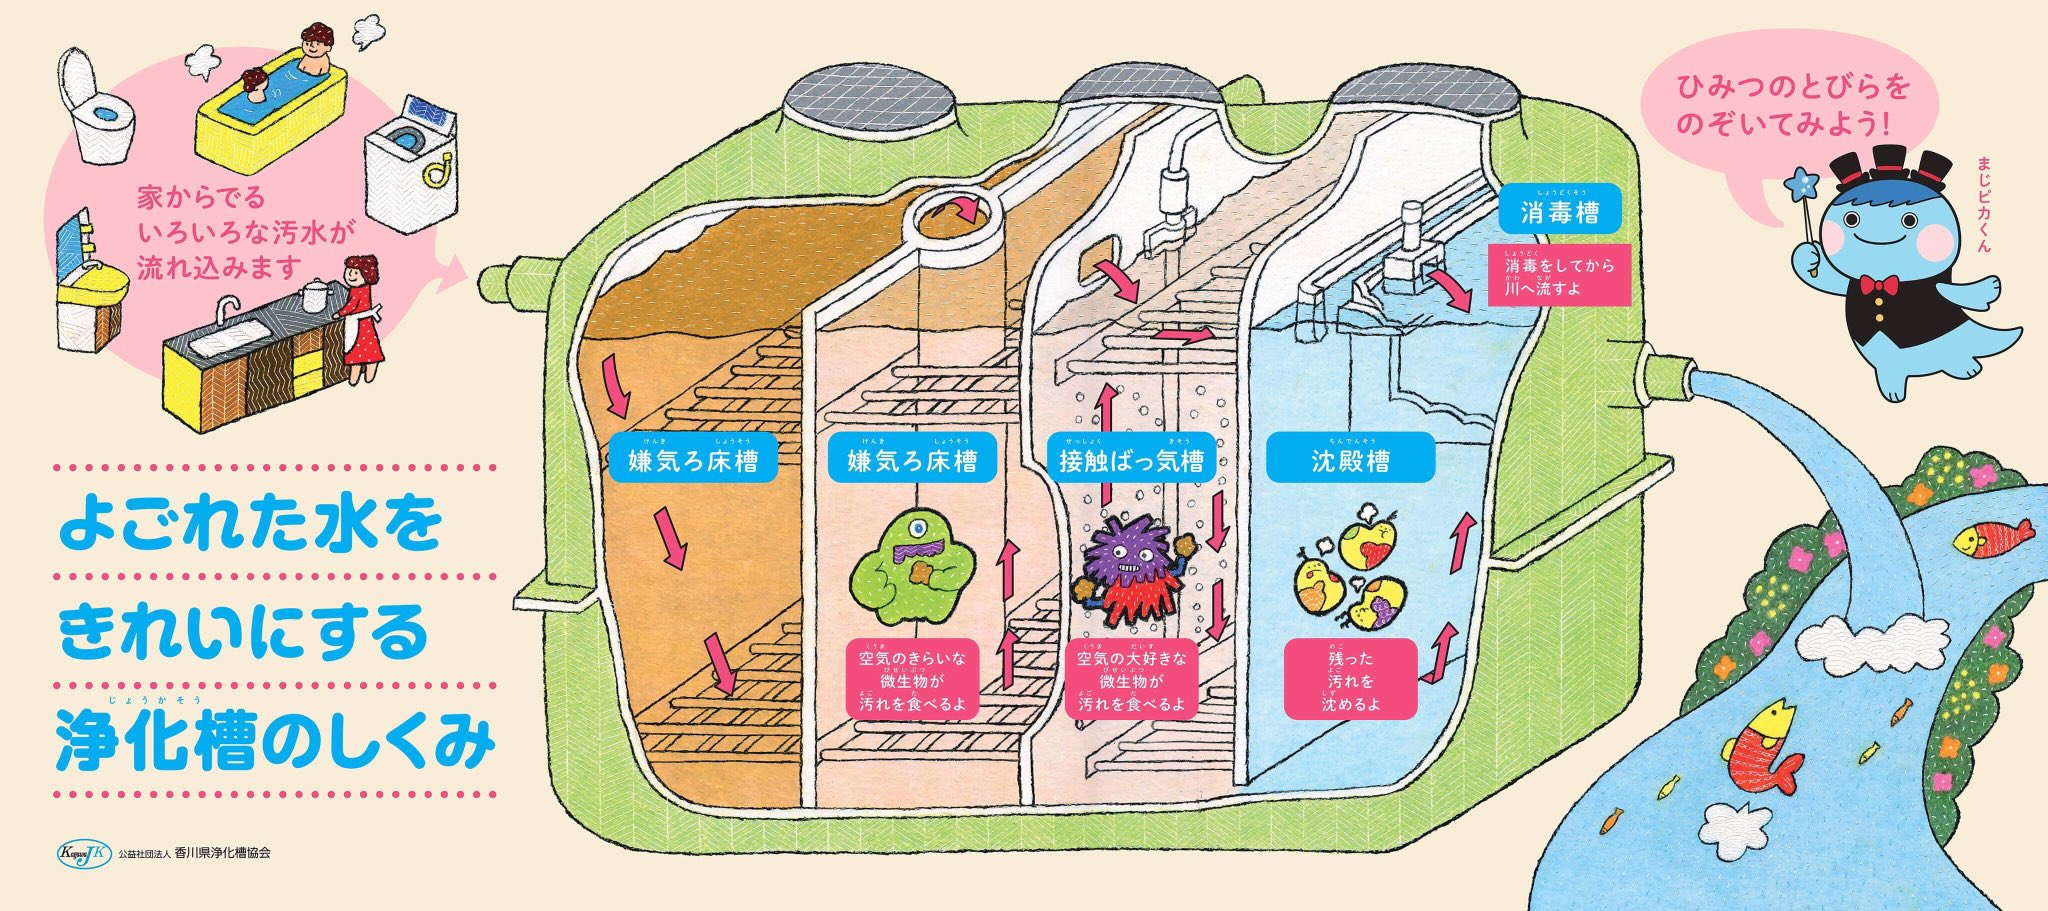 توییتر うにのれおな در توییتر 前回に引き続き香川県浄化槽協会様のイベント展示物のイラストを担当させていただきました 秘密の扉をめくると水を綺麗にする微生物が出てくる仕掛け絵本のような楽しい作りになっています Illustration イラスト Esimerkki